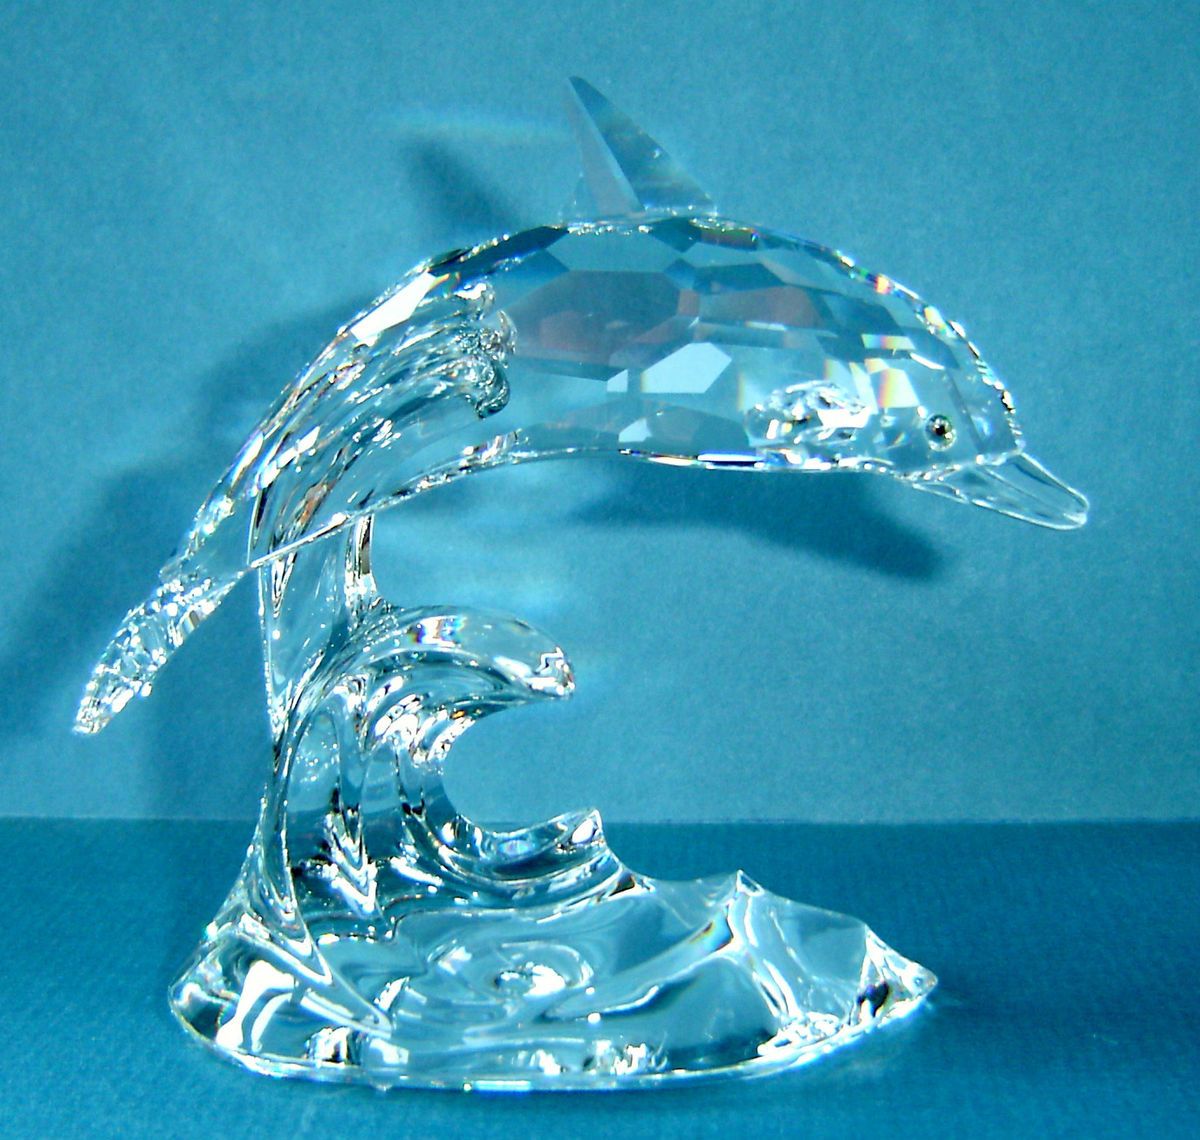 Swarovski Silver Crystal Dolphin in Waves 7644 NR 000 001 MIB RETIRED